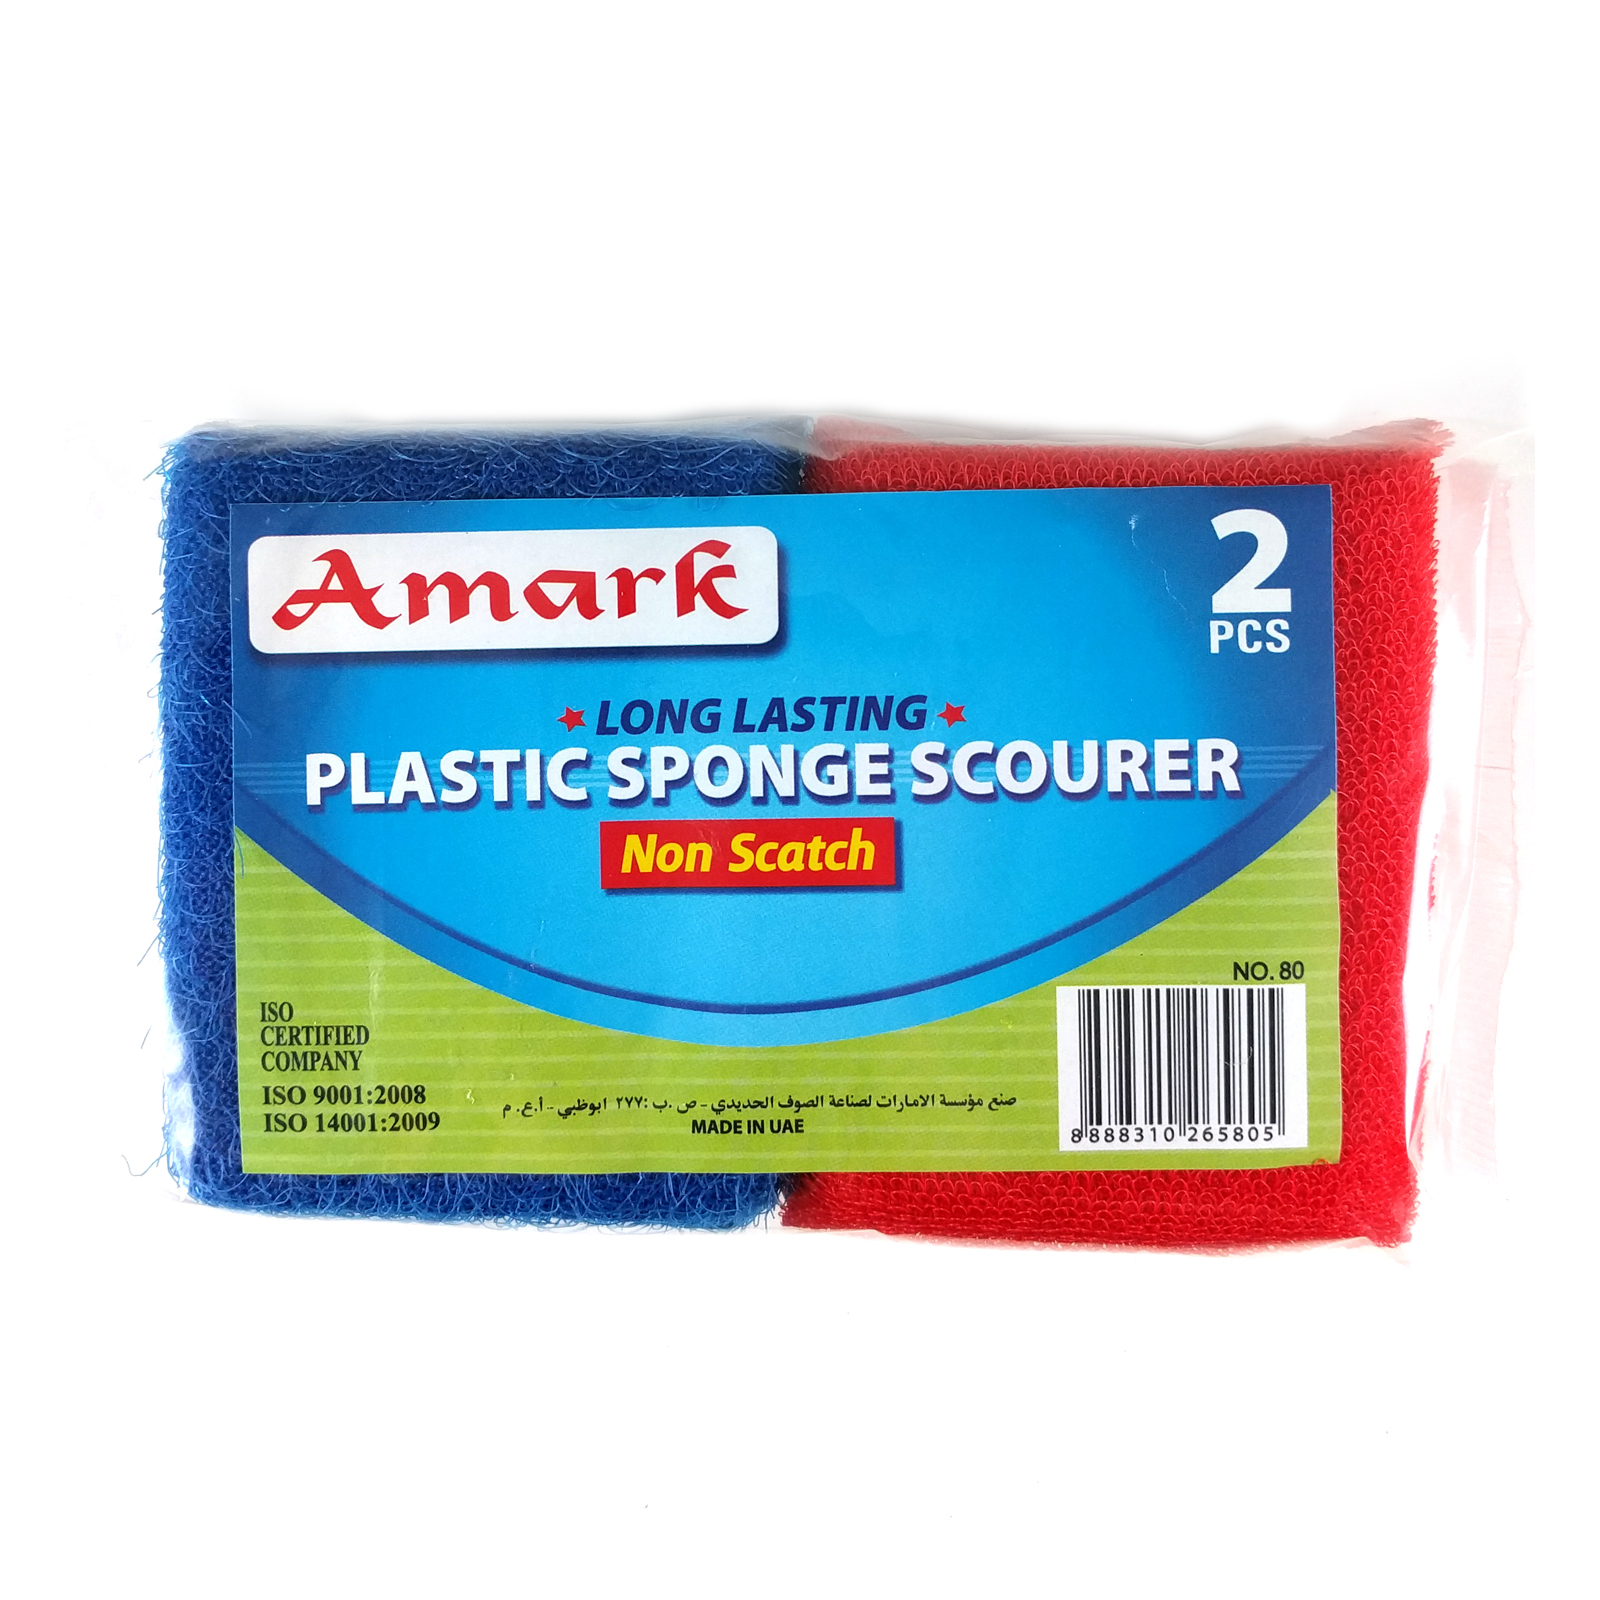 Amark Plastic Non-Scratch Sponge Scourer 4-pc Pack